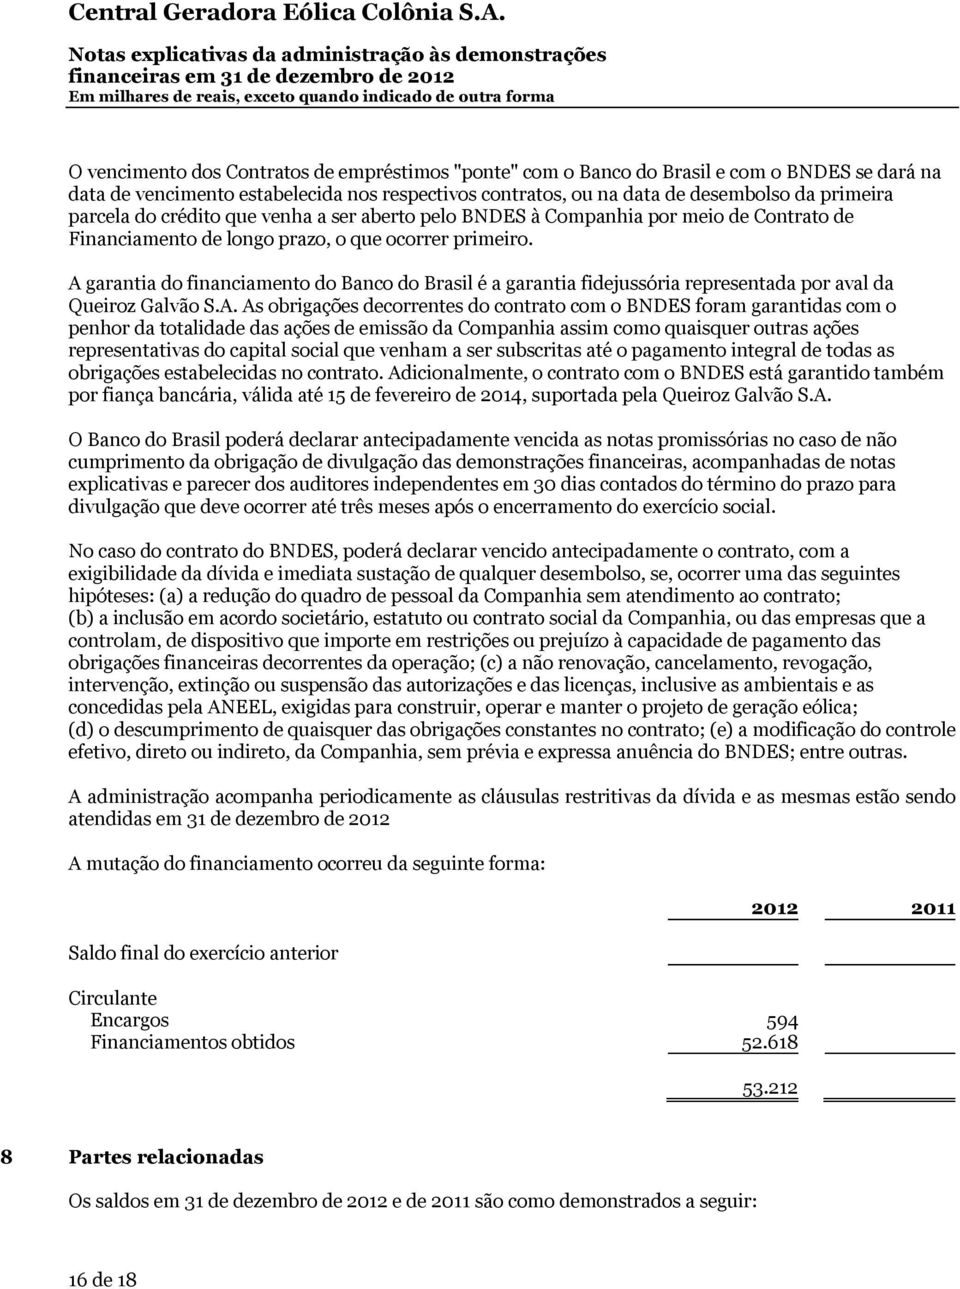 A garantia do financiamento do Banco do Brasil é a garantia fidejussória representada por aval da Queiroz Galvão S.A. As obrigações decorrentes do contrato com o BNDES foram garantidas com o penhor